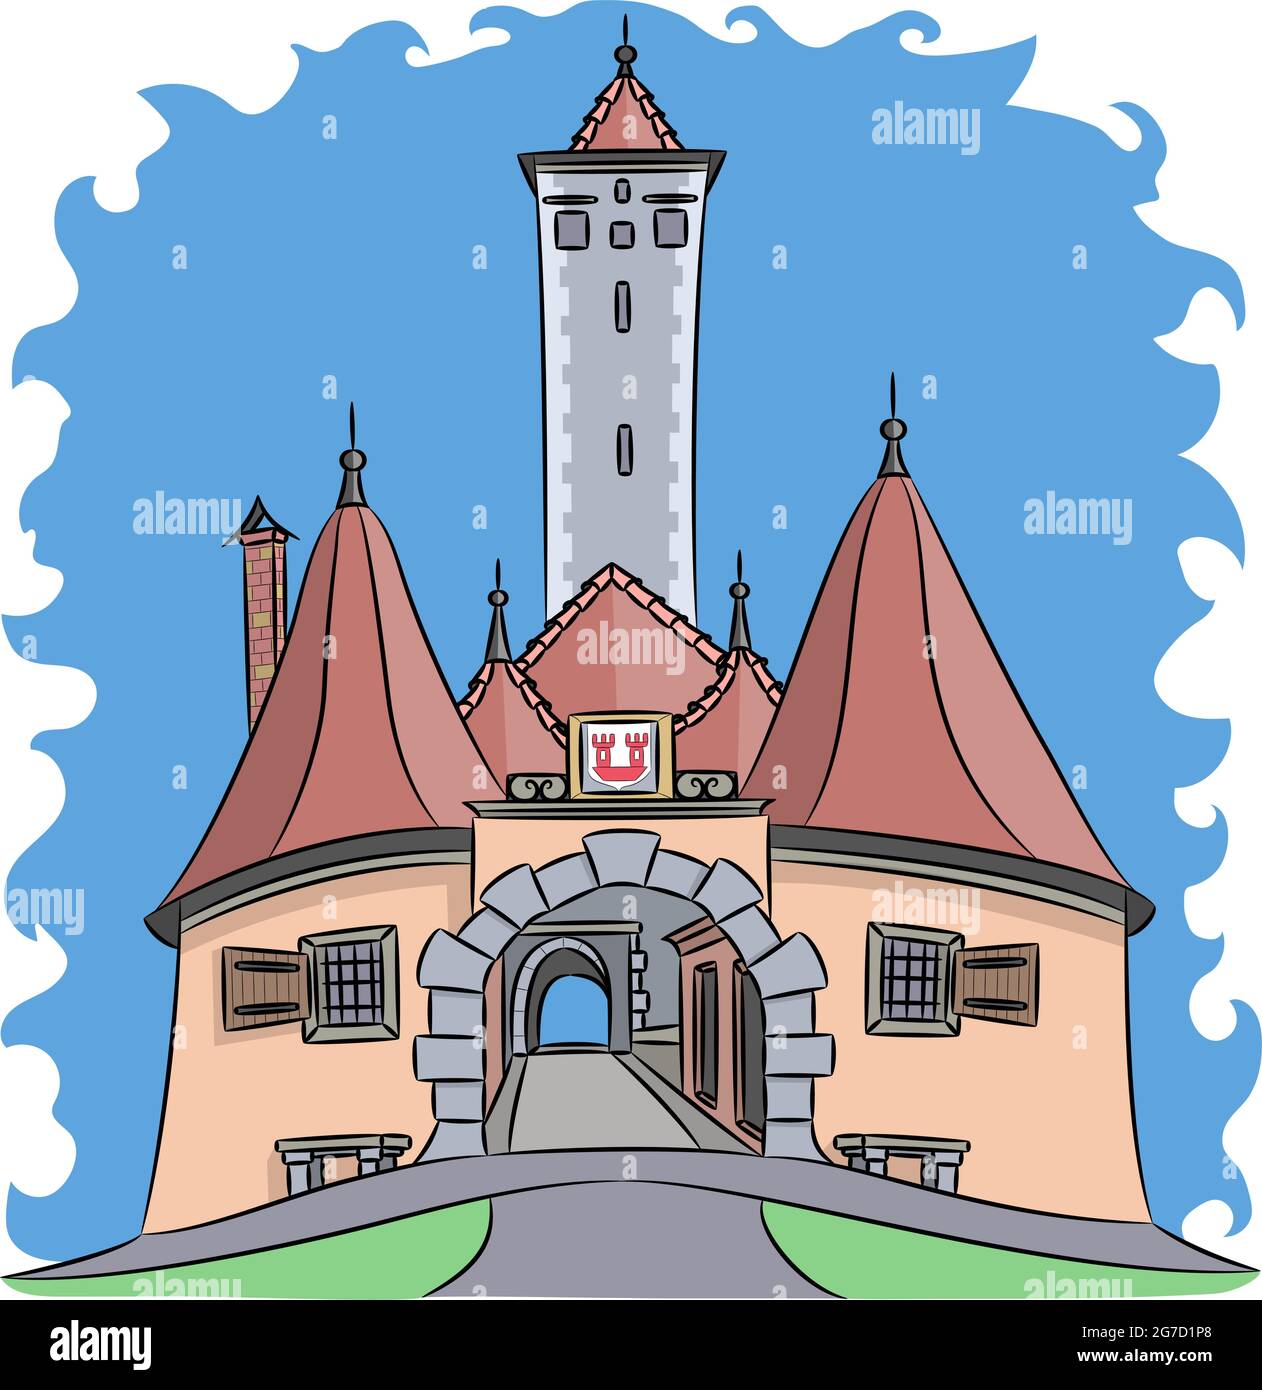 Illustration vectorielle de la porte médiévale urbaine de Burtorg avec tours. Rothenburg ob der Tauber. Allemagne. Bavière Illustration de Vecteur